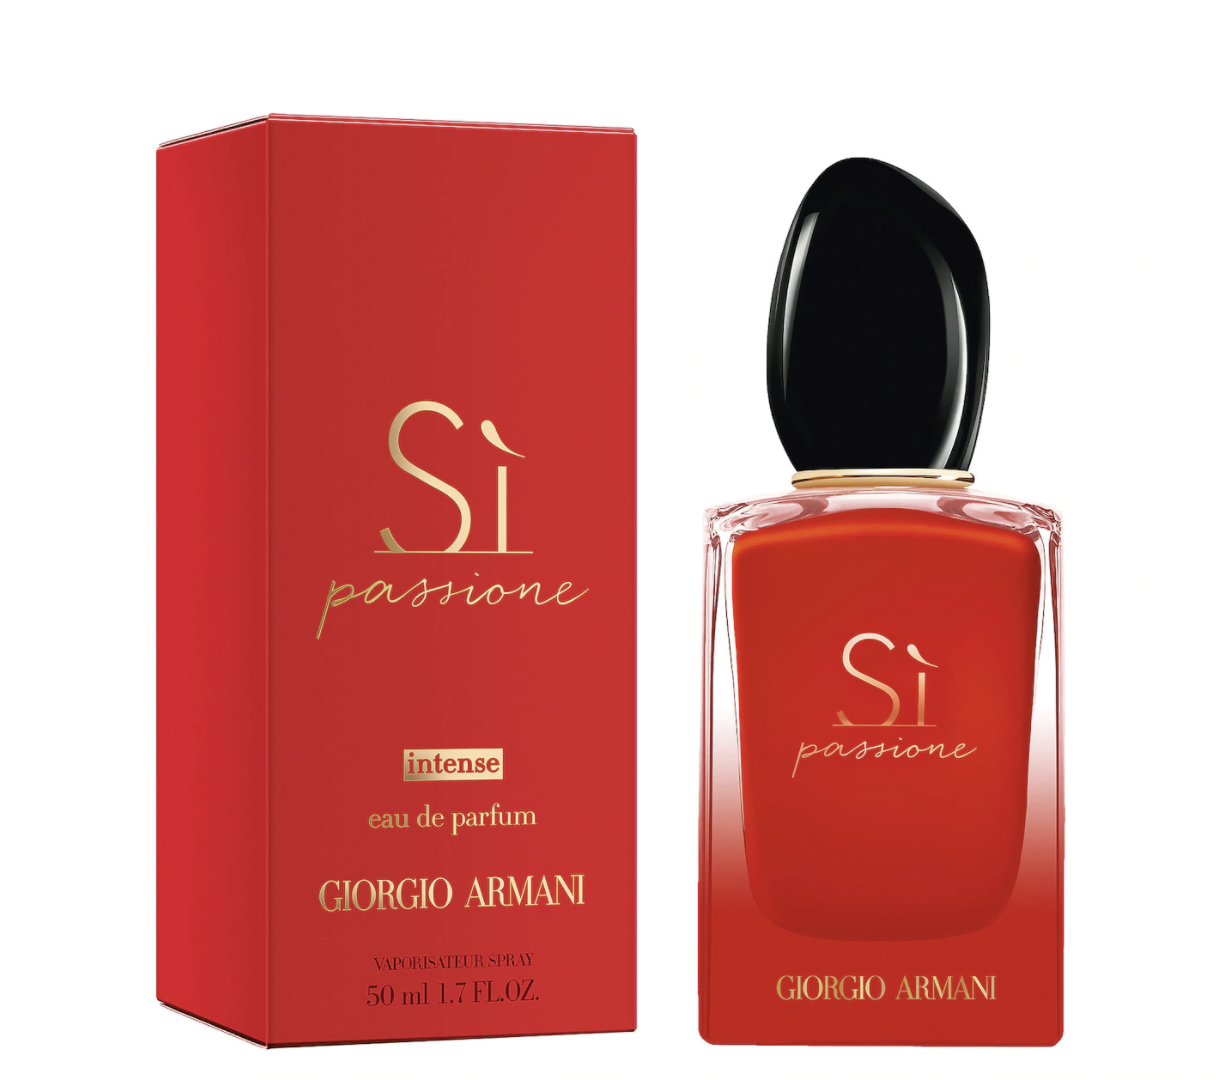 הבושם הטוב ביותר לשינה- ג'ורג'יו ארמאני ביוטי Si Intense Eau de Parfum